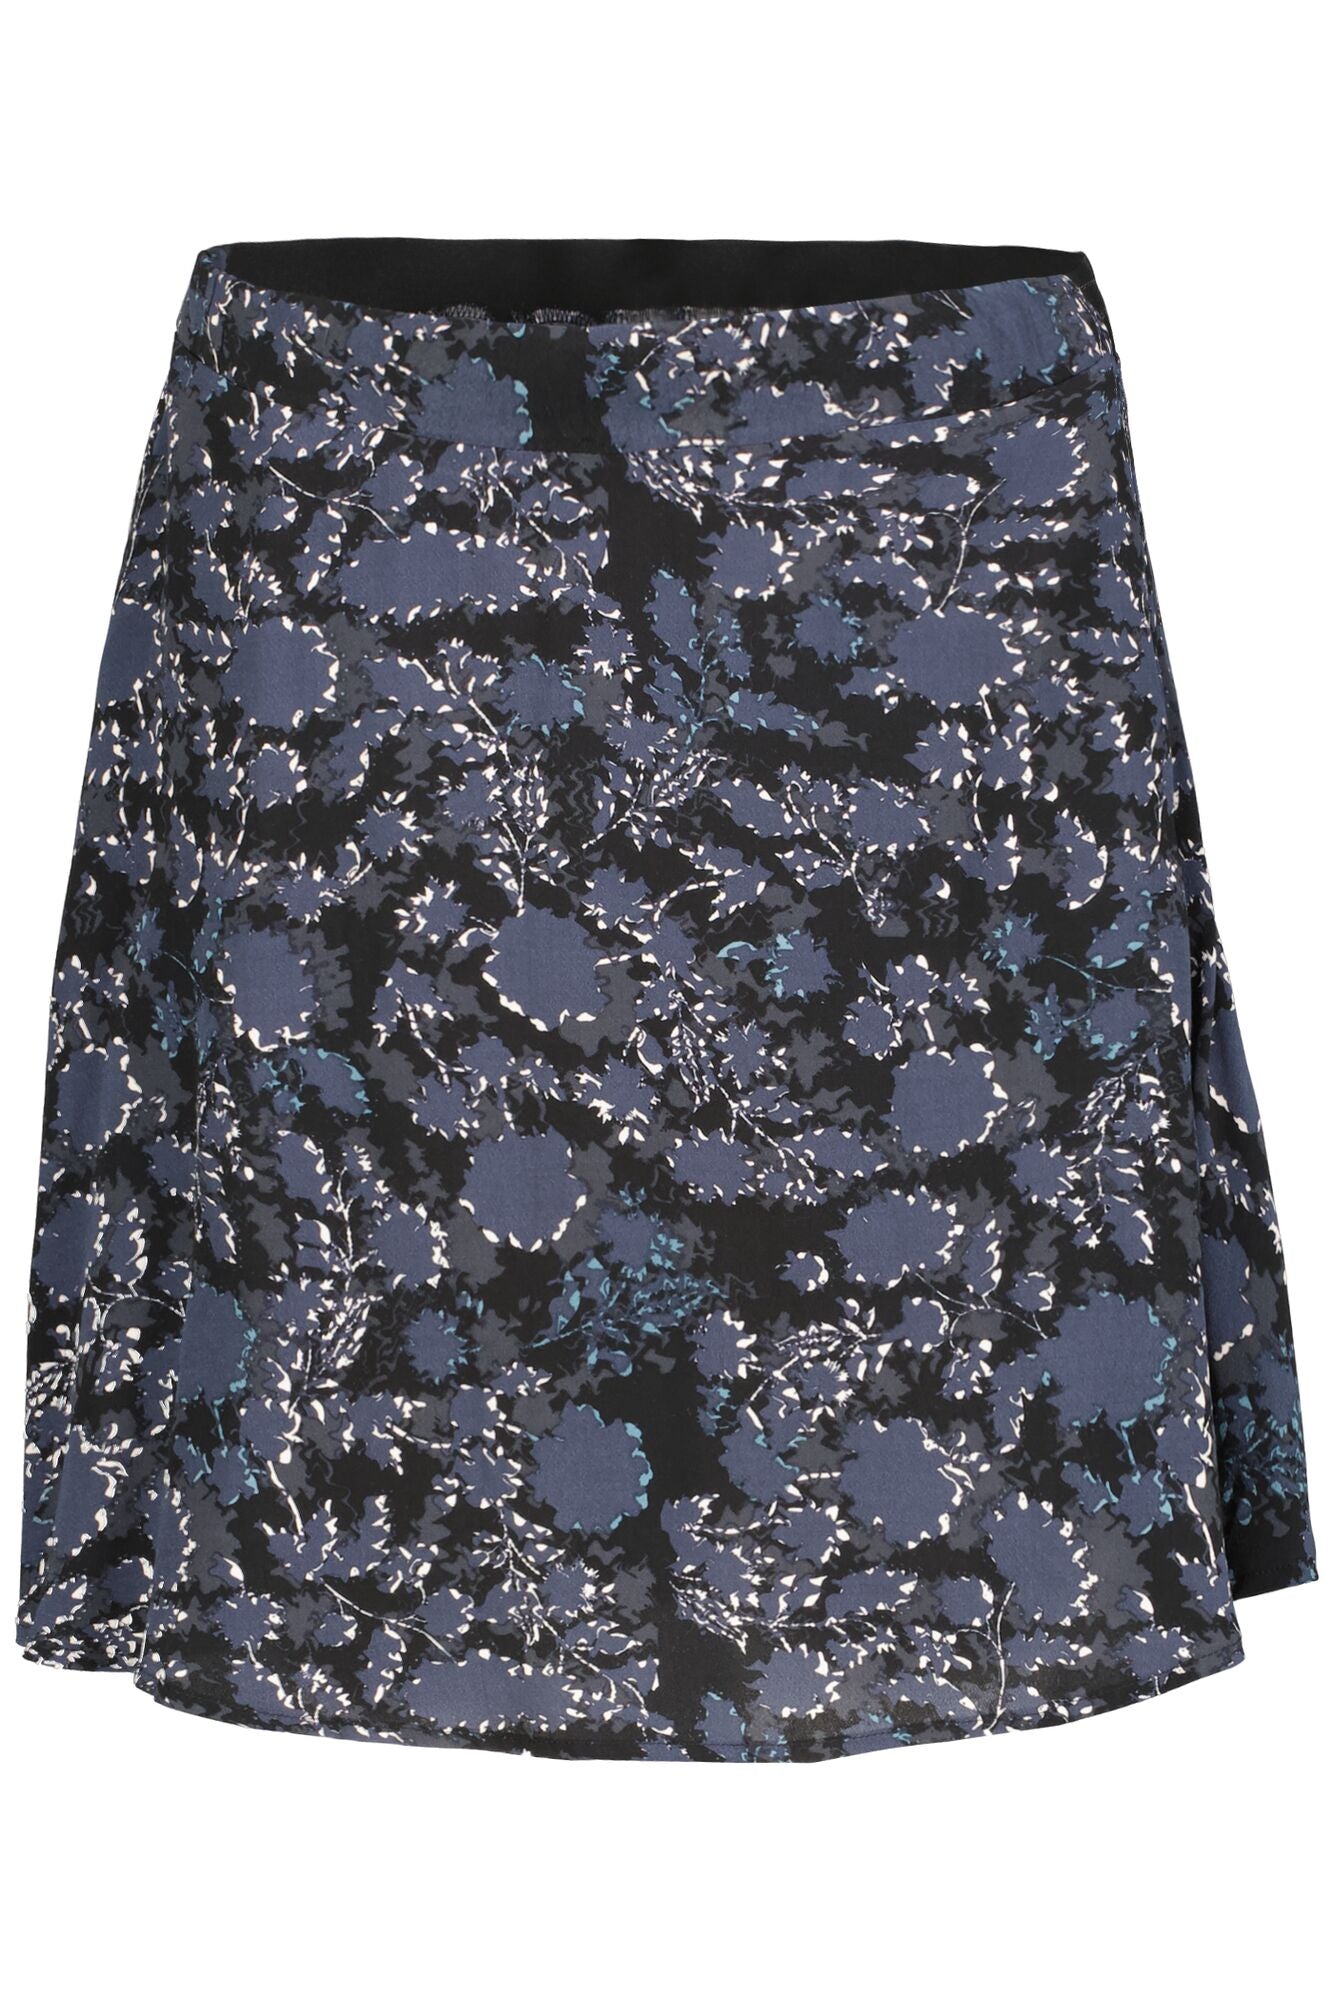 GARCIA Floral Midnight Print Mini Skirt